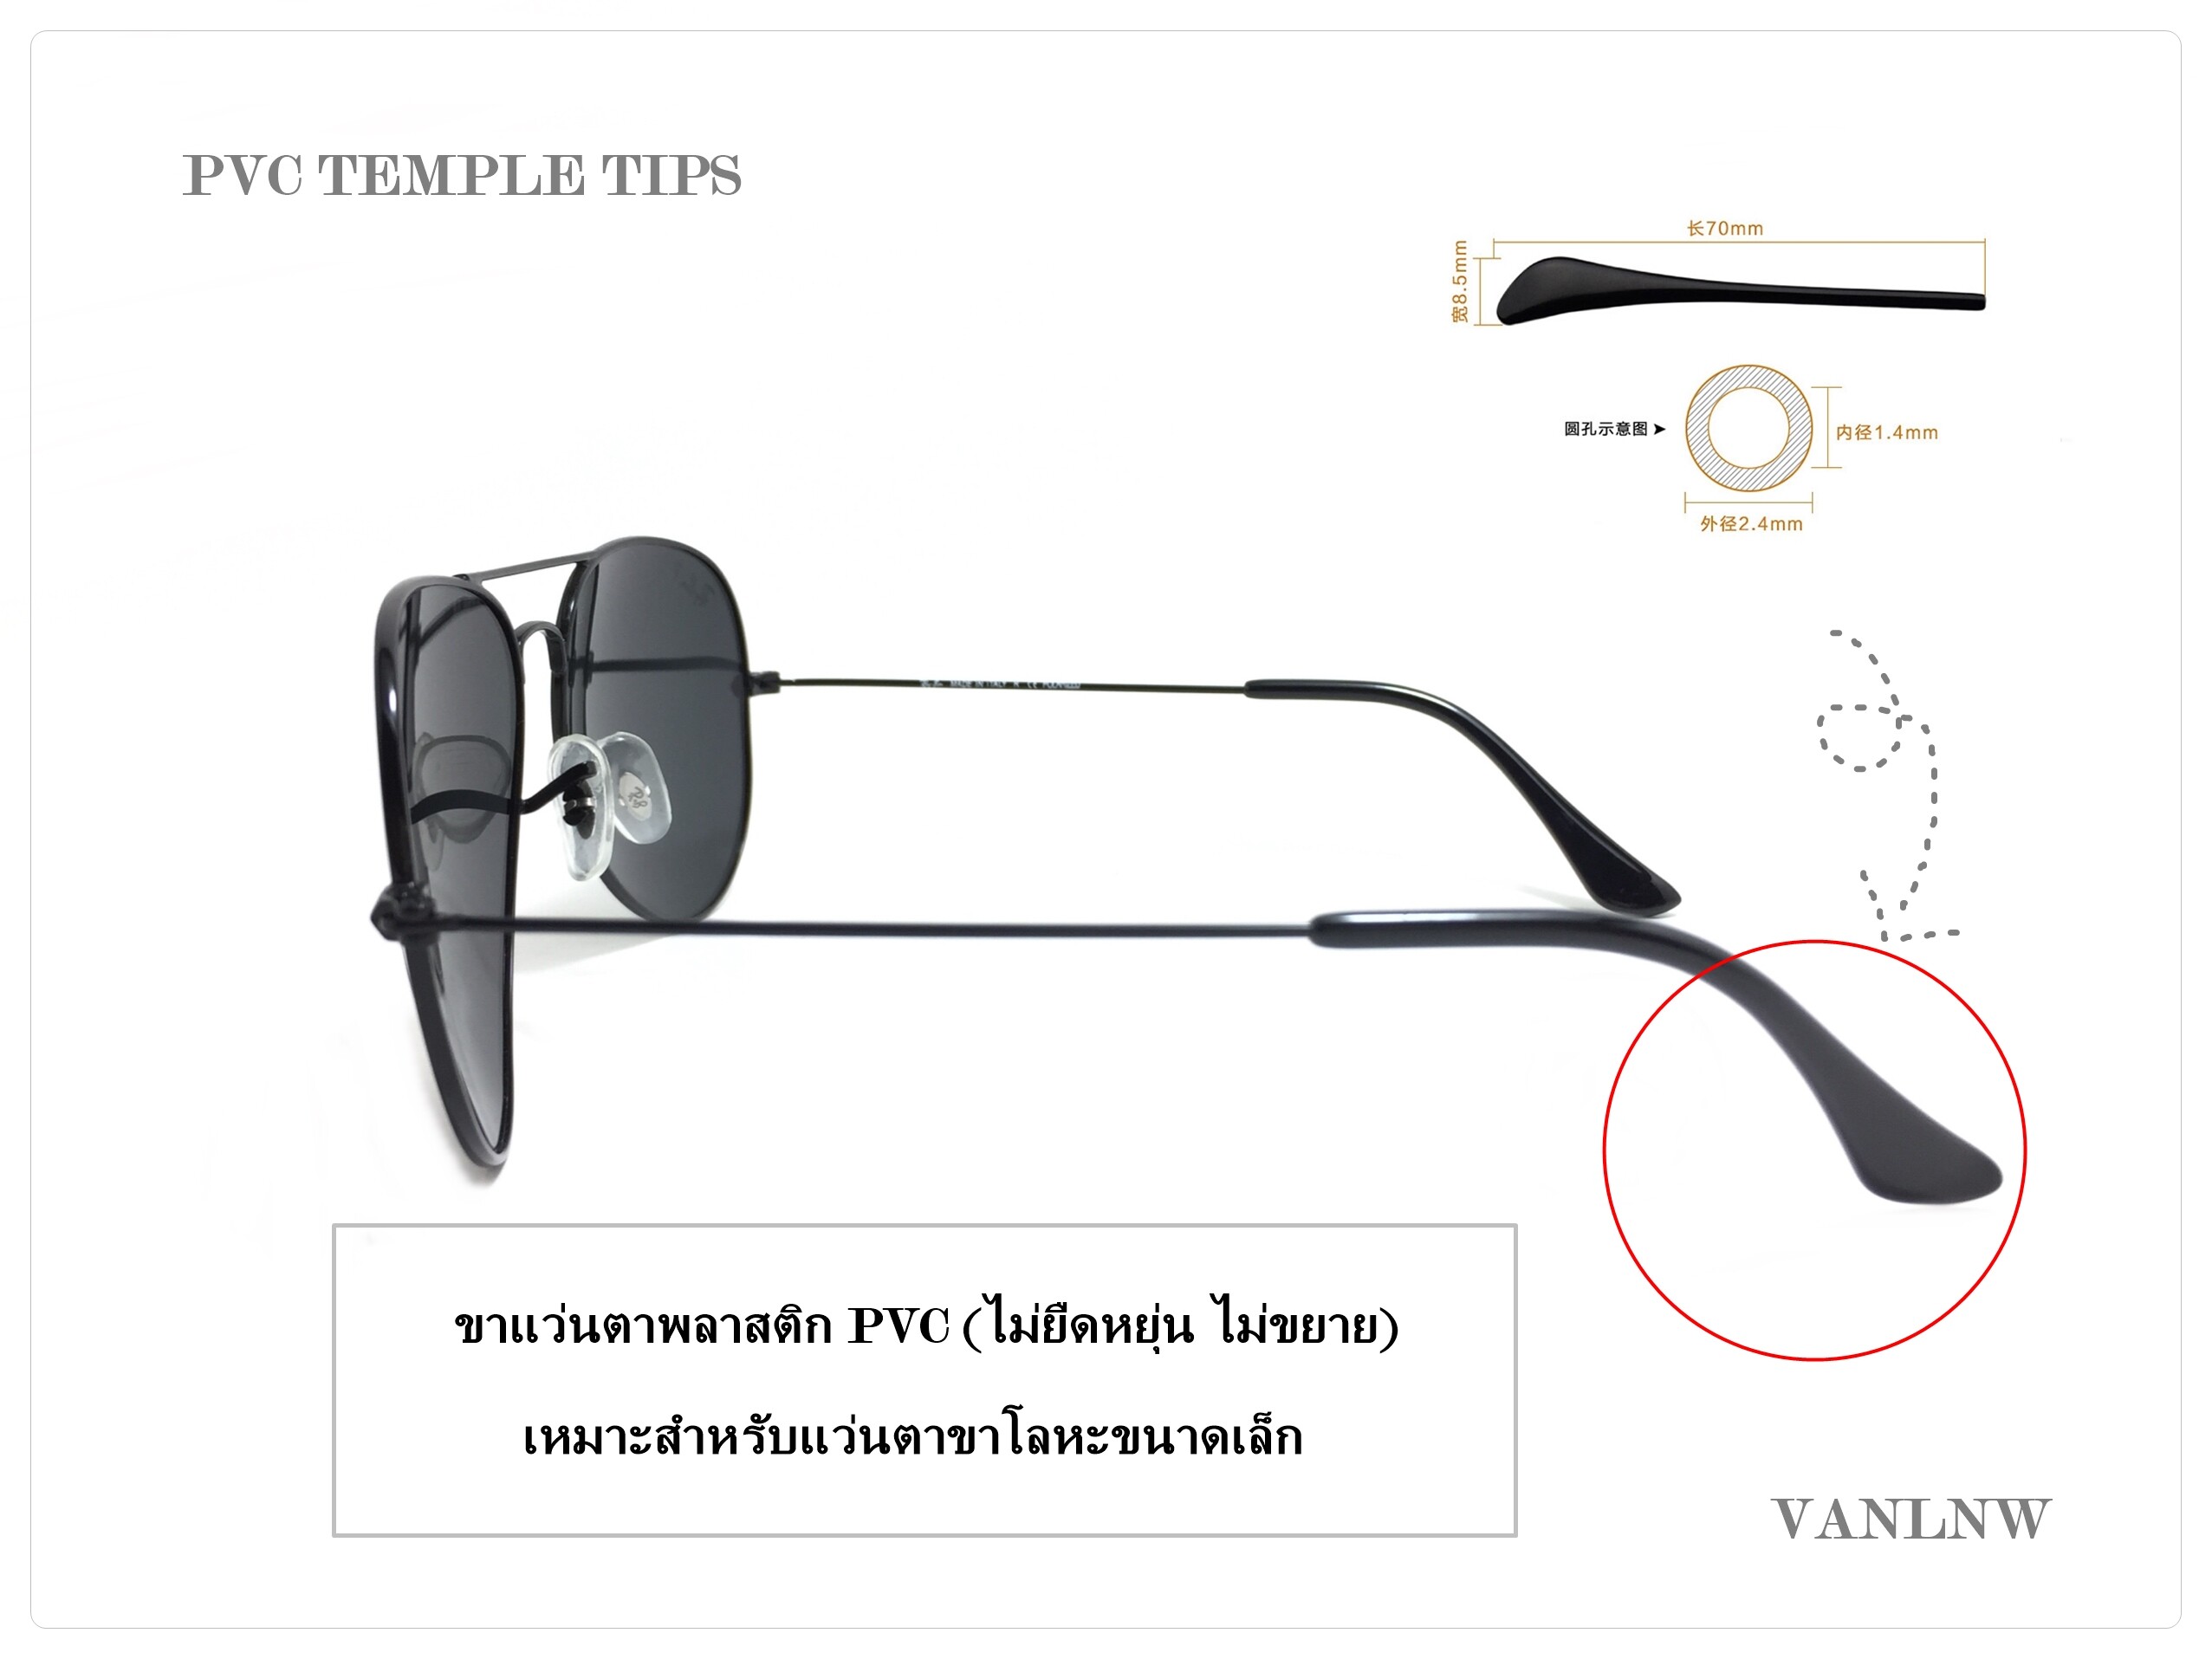 ขาแว่นตา RB Temple Tips ปลอกขาแว่นตา ปลายขาแว่นตา ขาแว่นตาแบบเปลี่ยน วัสดุ PVC  (ไม่ยืดหยุ่น ) ขนาด 70 x 8.5 mm. เหมาะกับ แว่นตาขาเหล็ก แว่นขาเล็ก